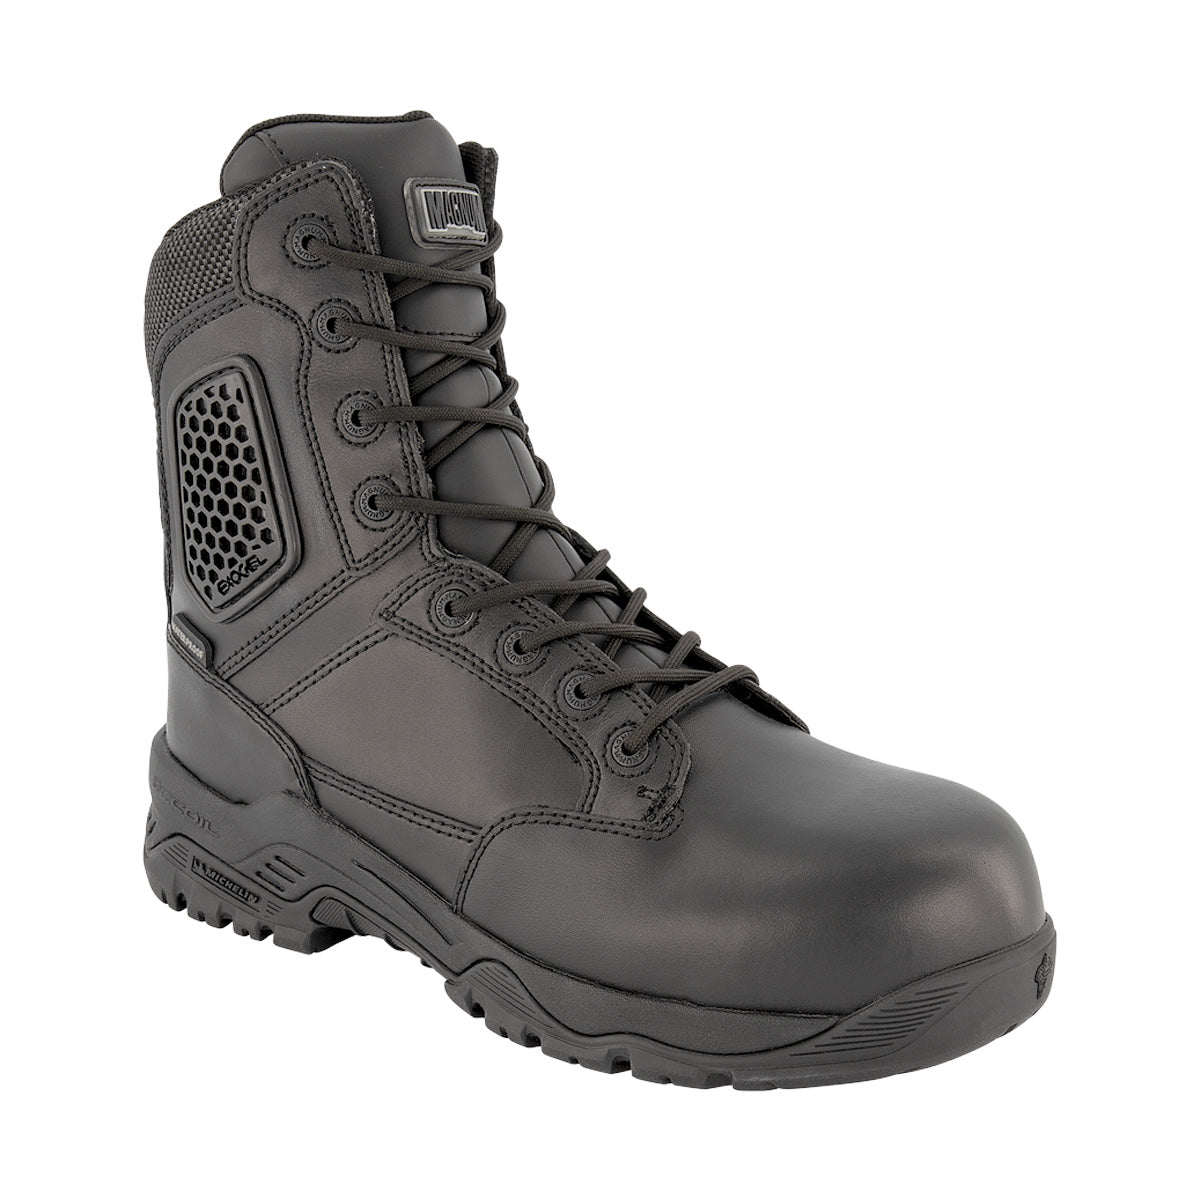 Magnum Strike Force 8.0 Leather Side-Zip Waterproof Boot Black Footwear Magnum Footwear Tactical Gear Supplier Tactical Distributors Australia